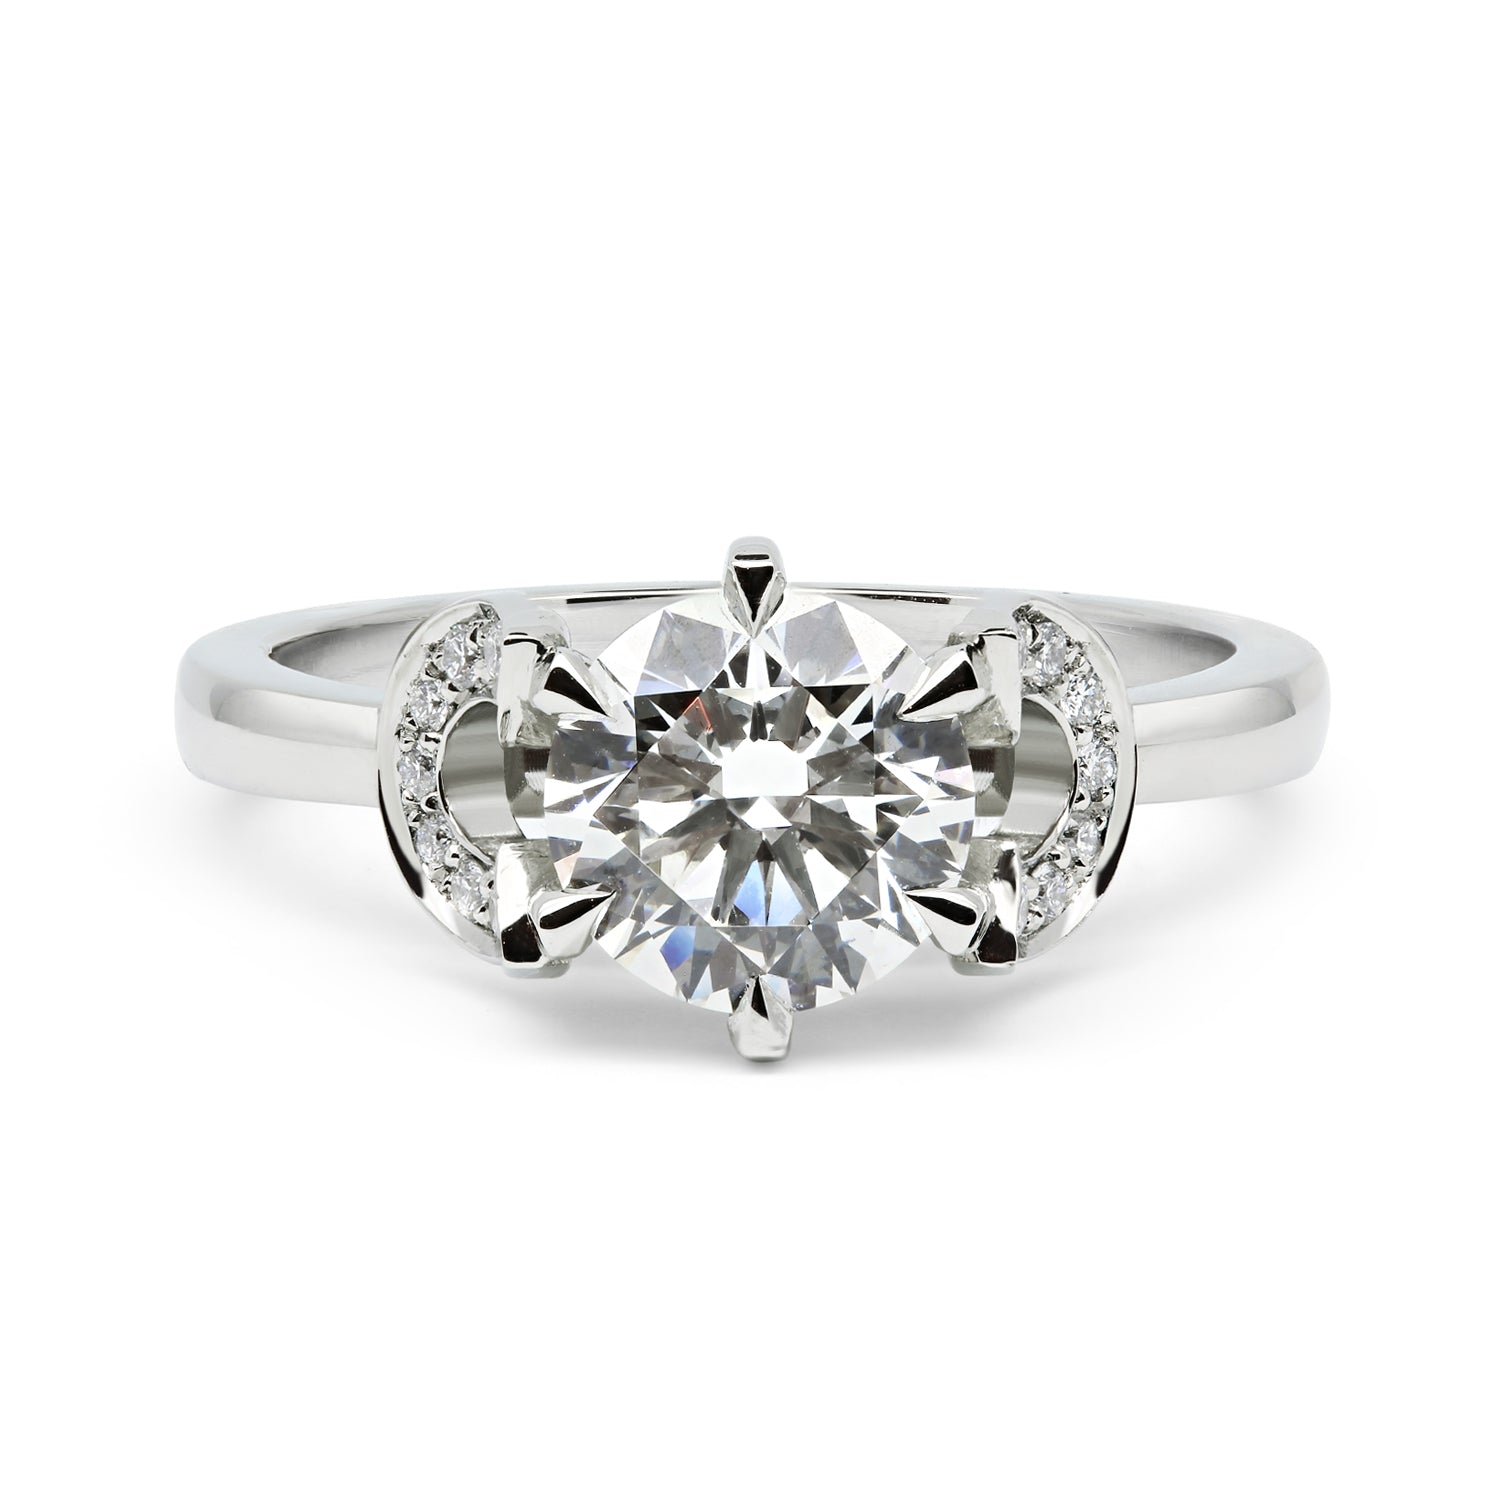 Bespoke Horseshoe Diamond Engagement Ring